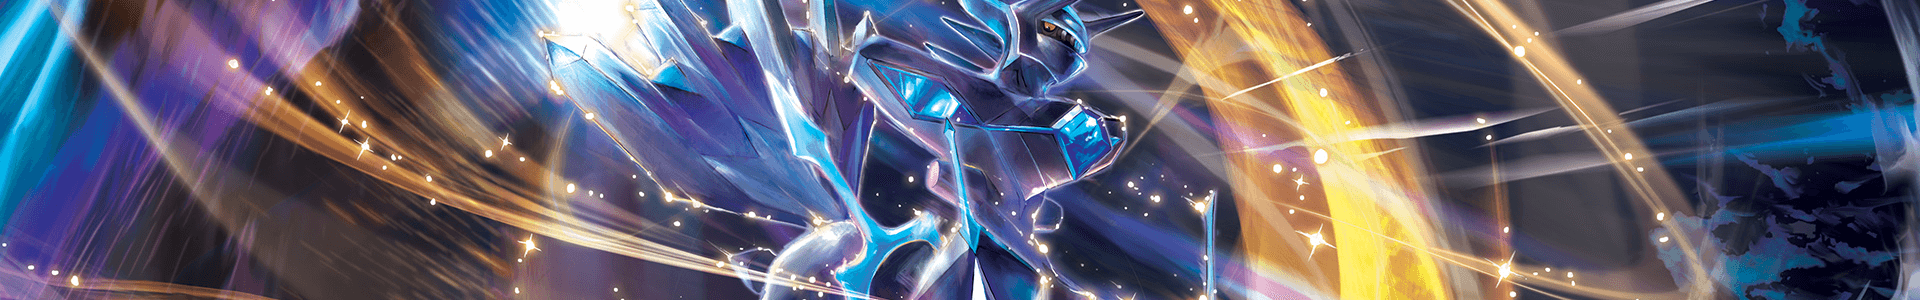 Pokémon | Astral Radiance - The Card Vault